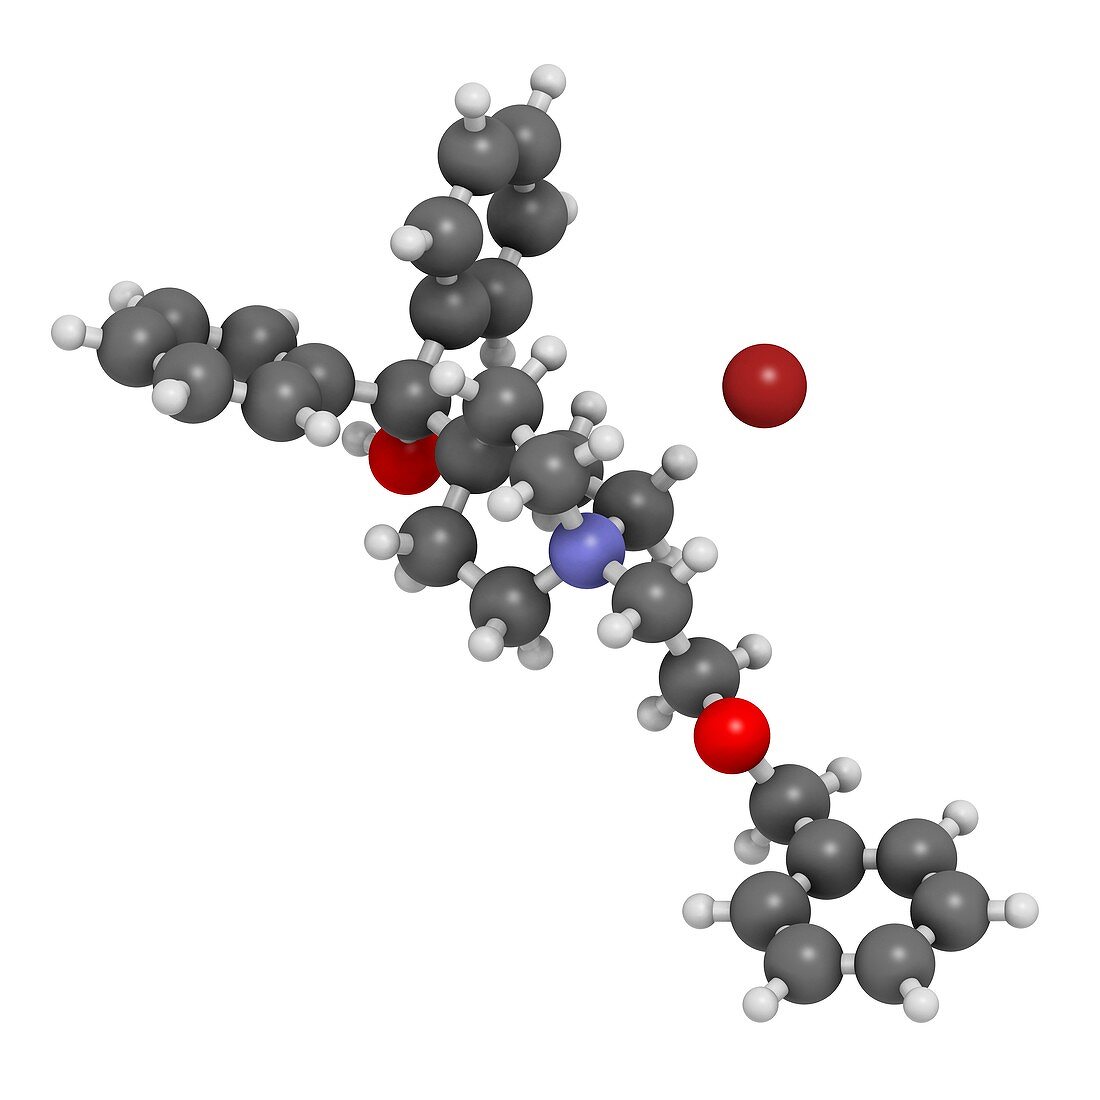 Umeclidinium bromide COPD drug molecule